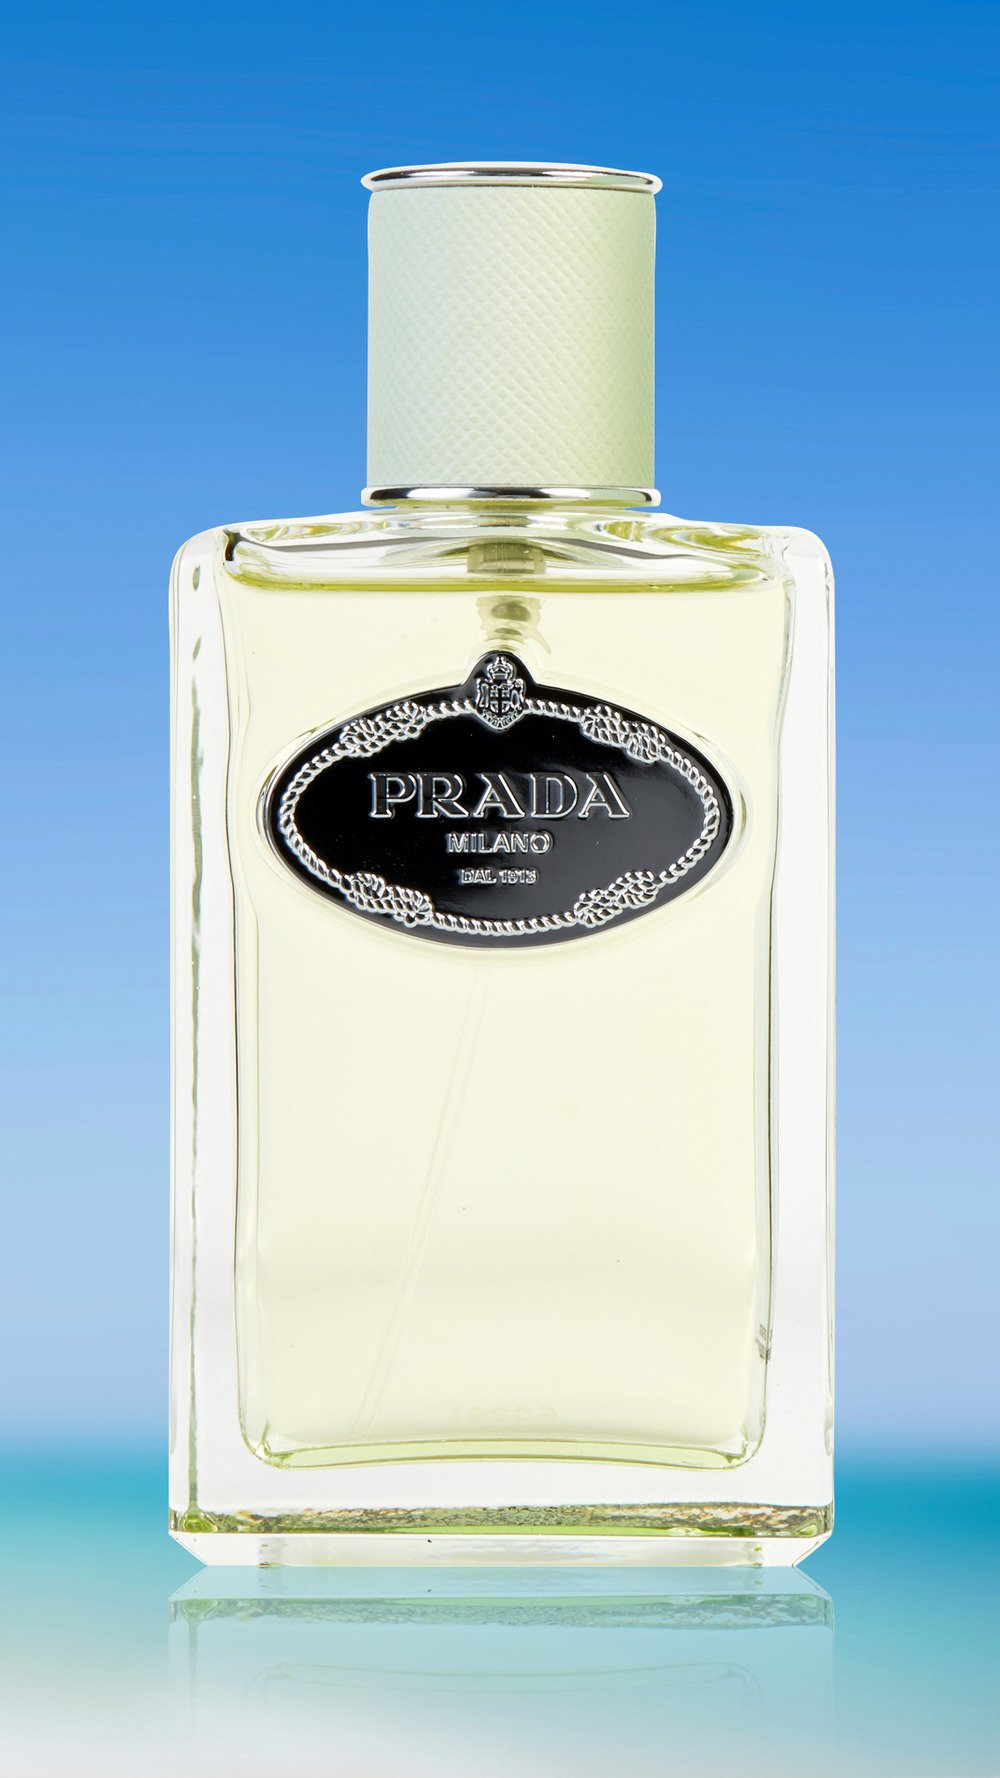 prada iris perfume review